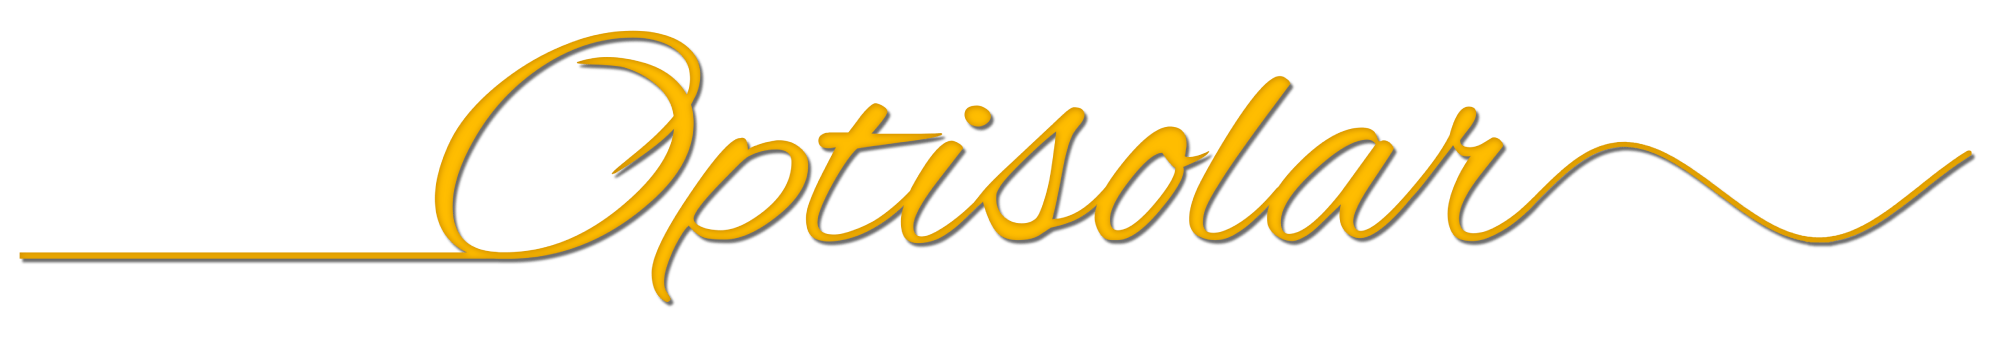 logo-optisolar.png